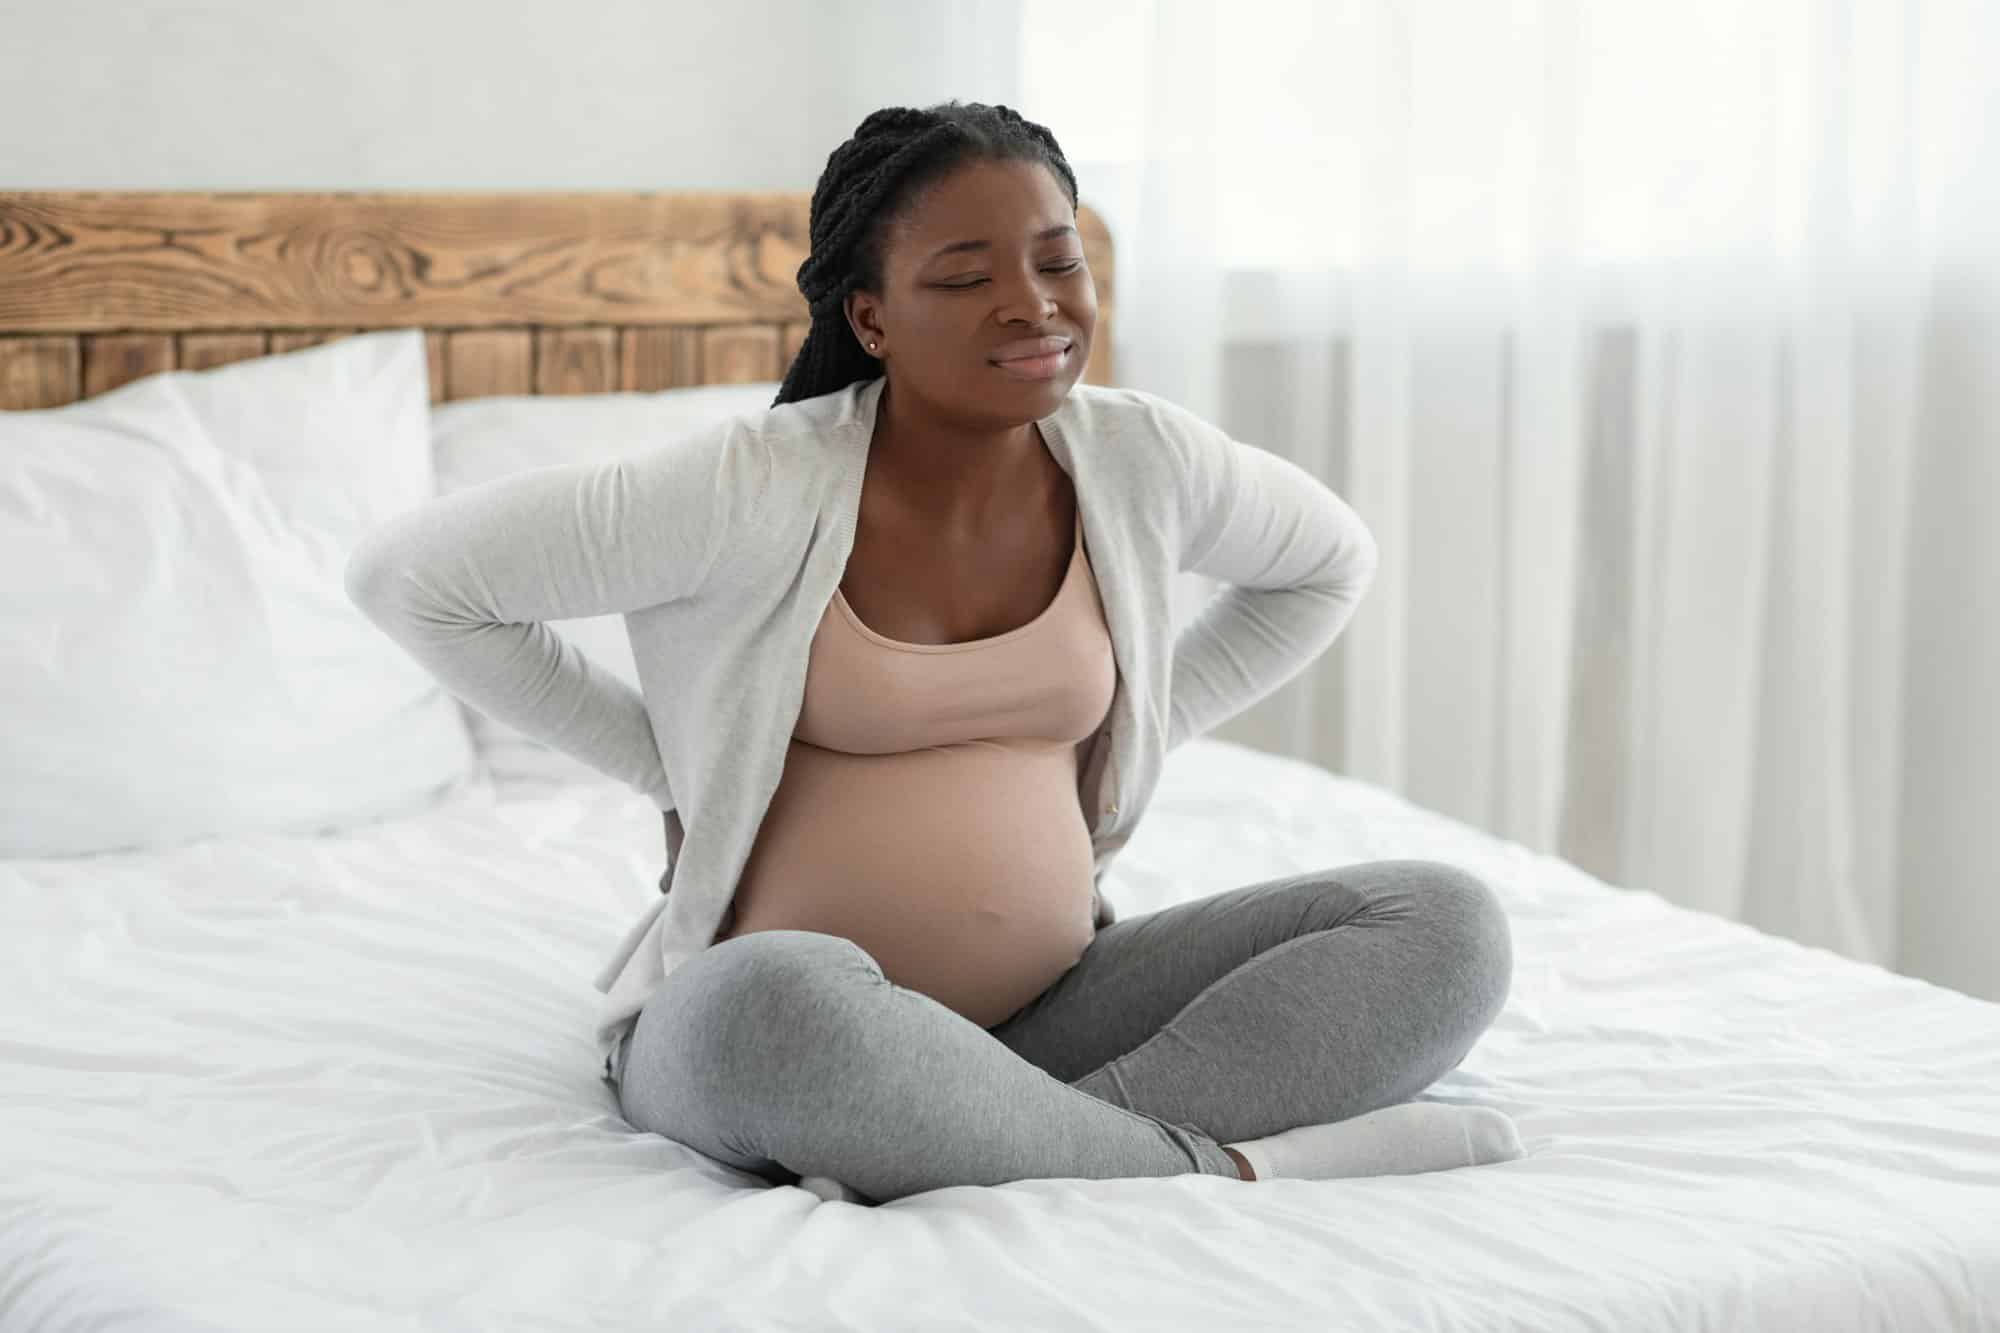 Εγκυμοσύνη: Πώς μπορείτε να ανακουφίσετε τον σοβαρό πόνο στην πλάτη